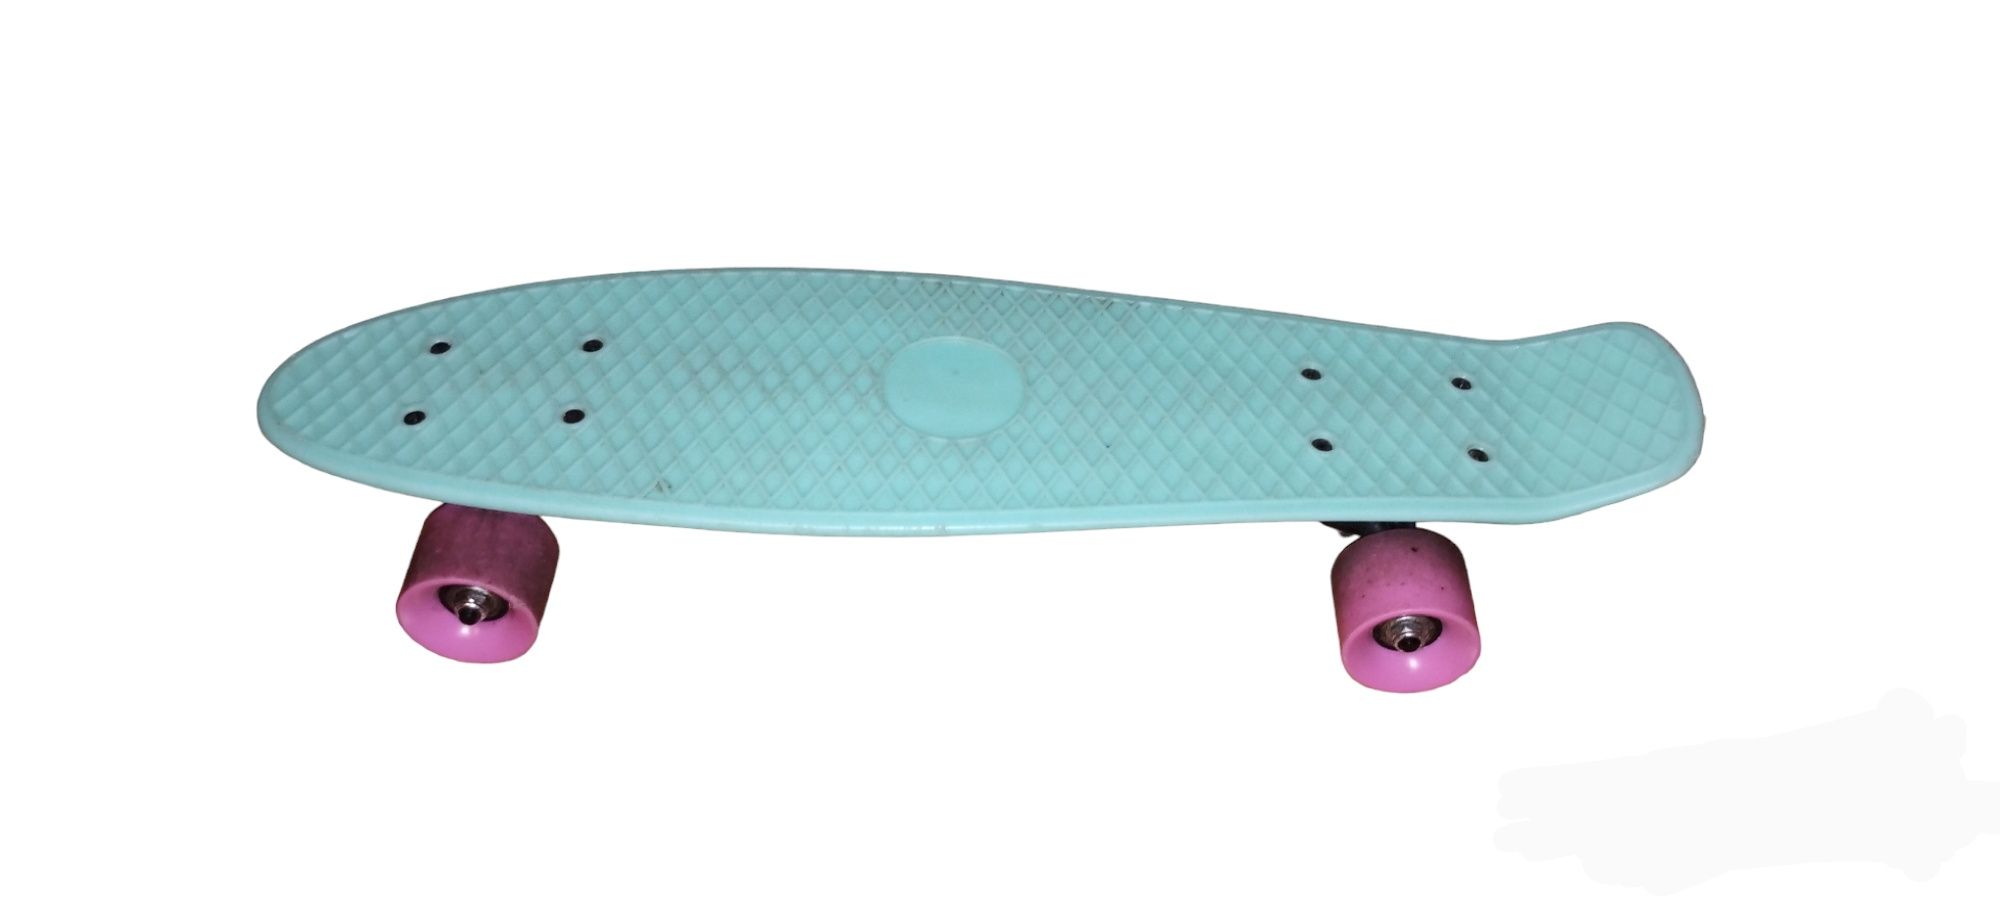 Skateboard  50 ron